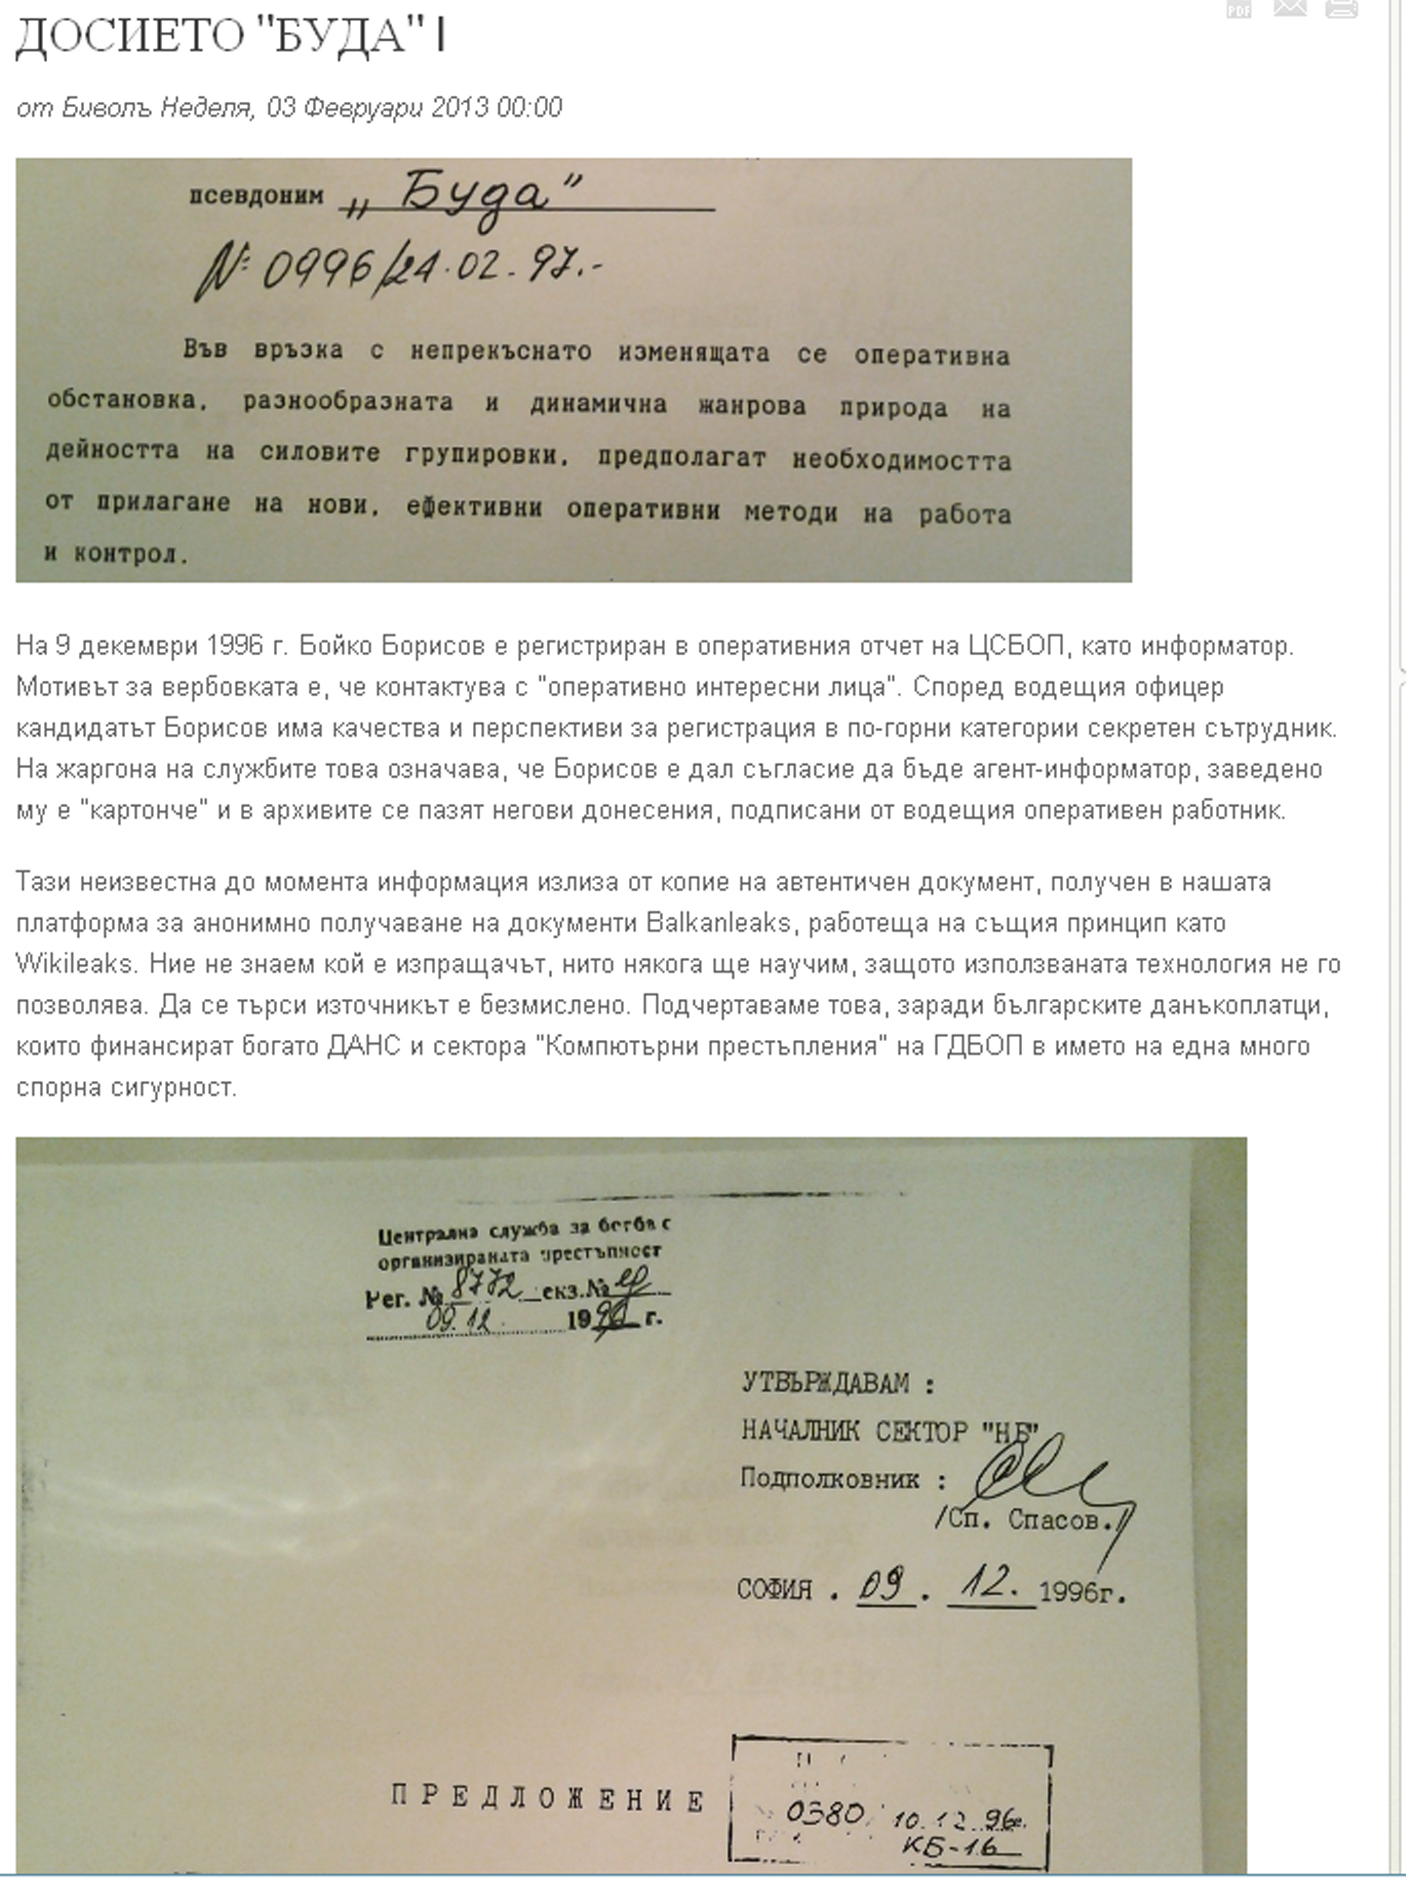 Мотивът за вербуването на Борисов са честите му контакти с оперативно интересни лица“.